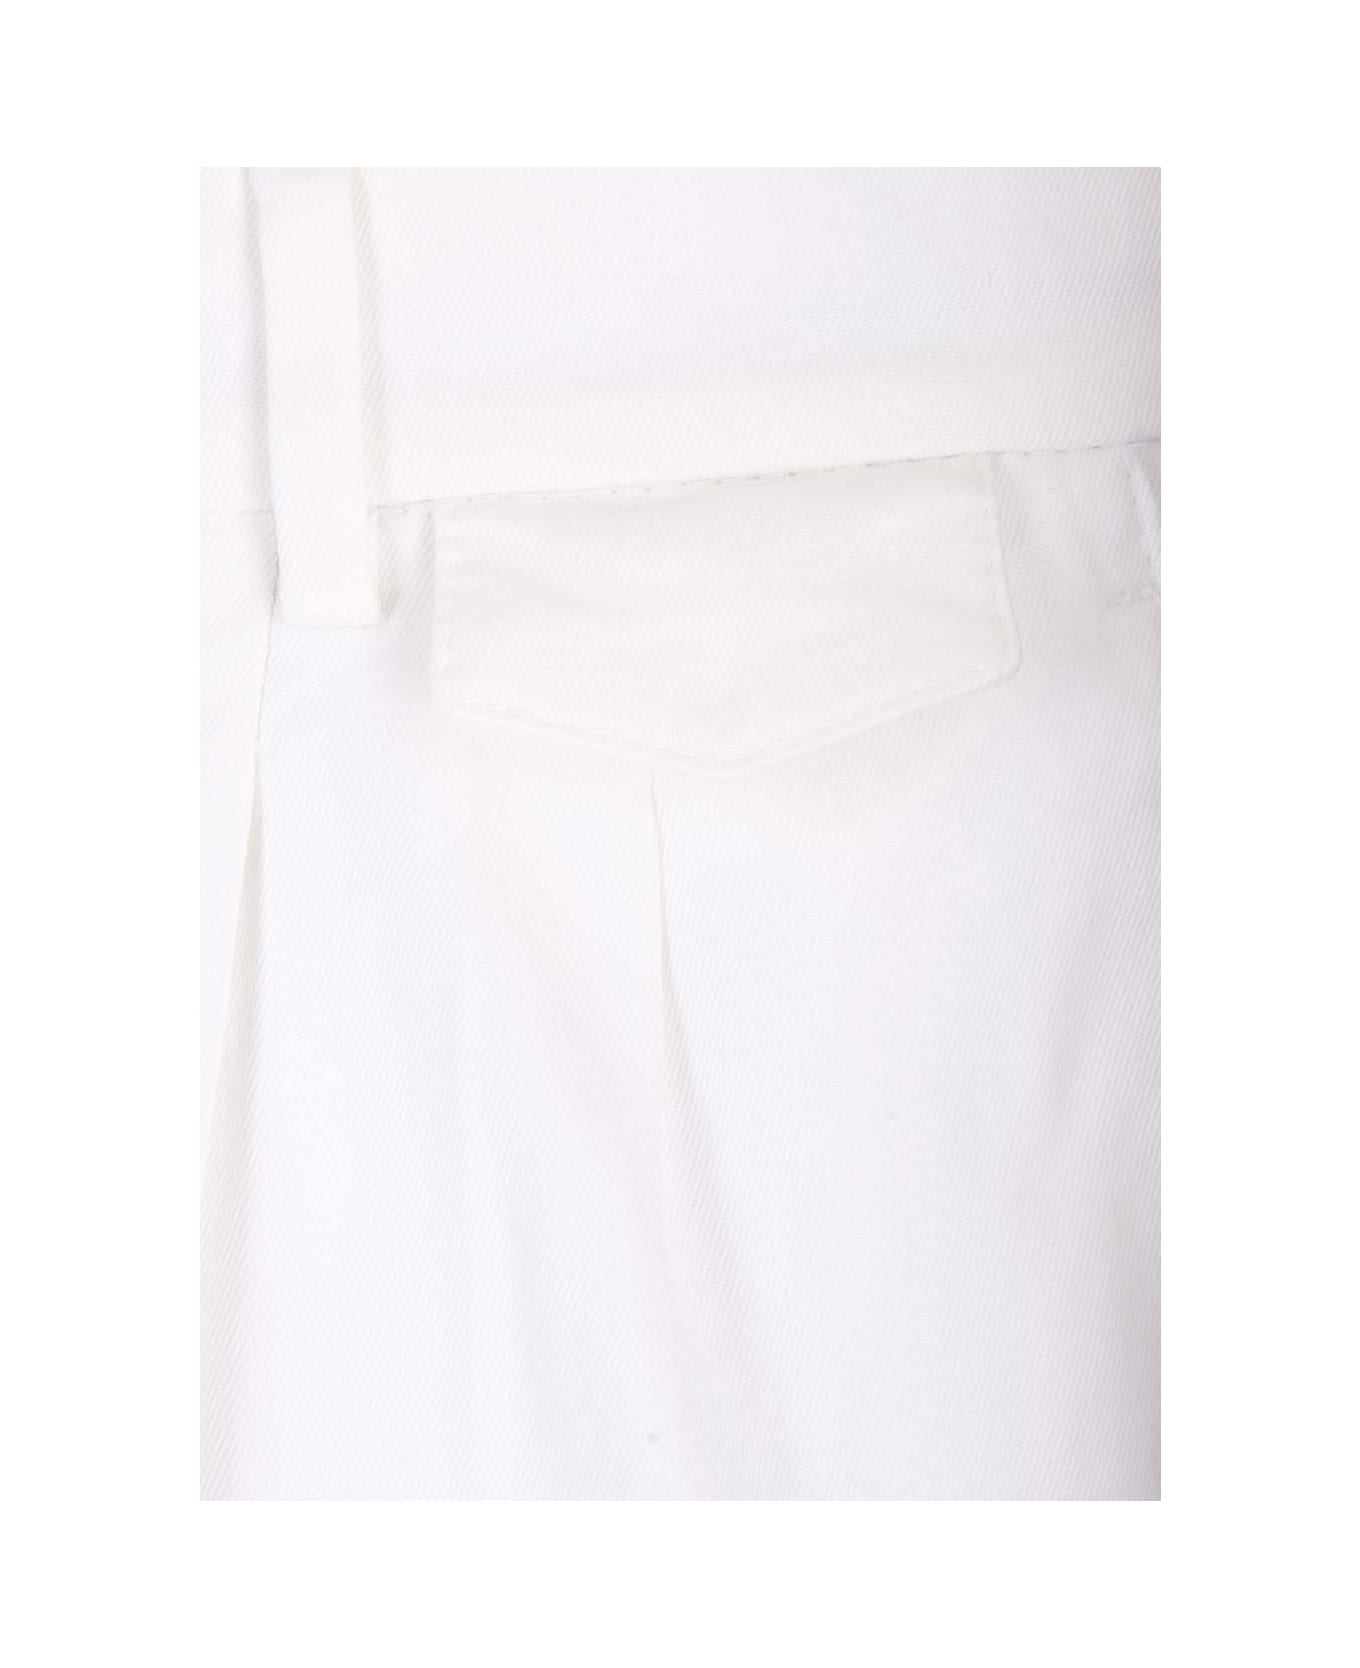 Brunello Cucinelli Straight-leg Tailored Trousers - White